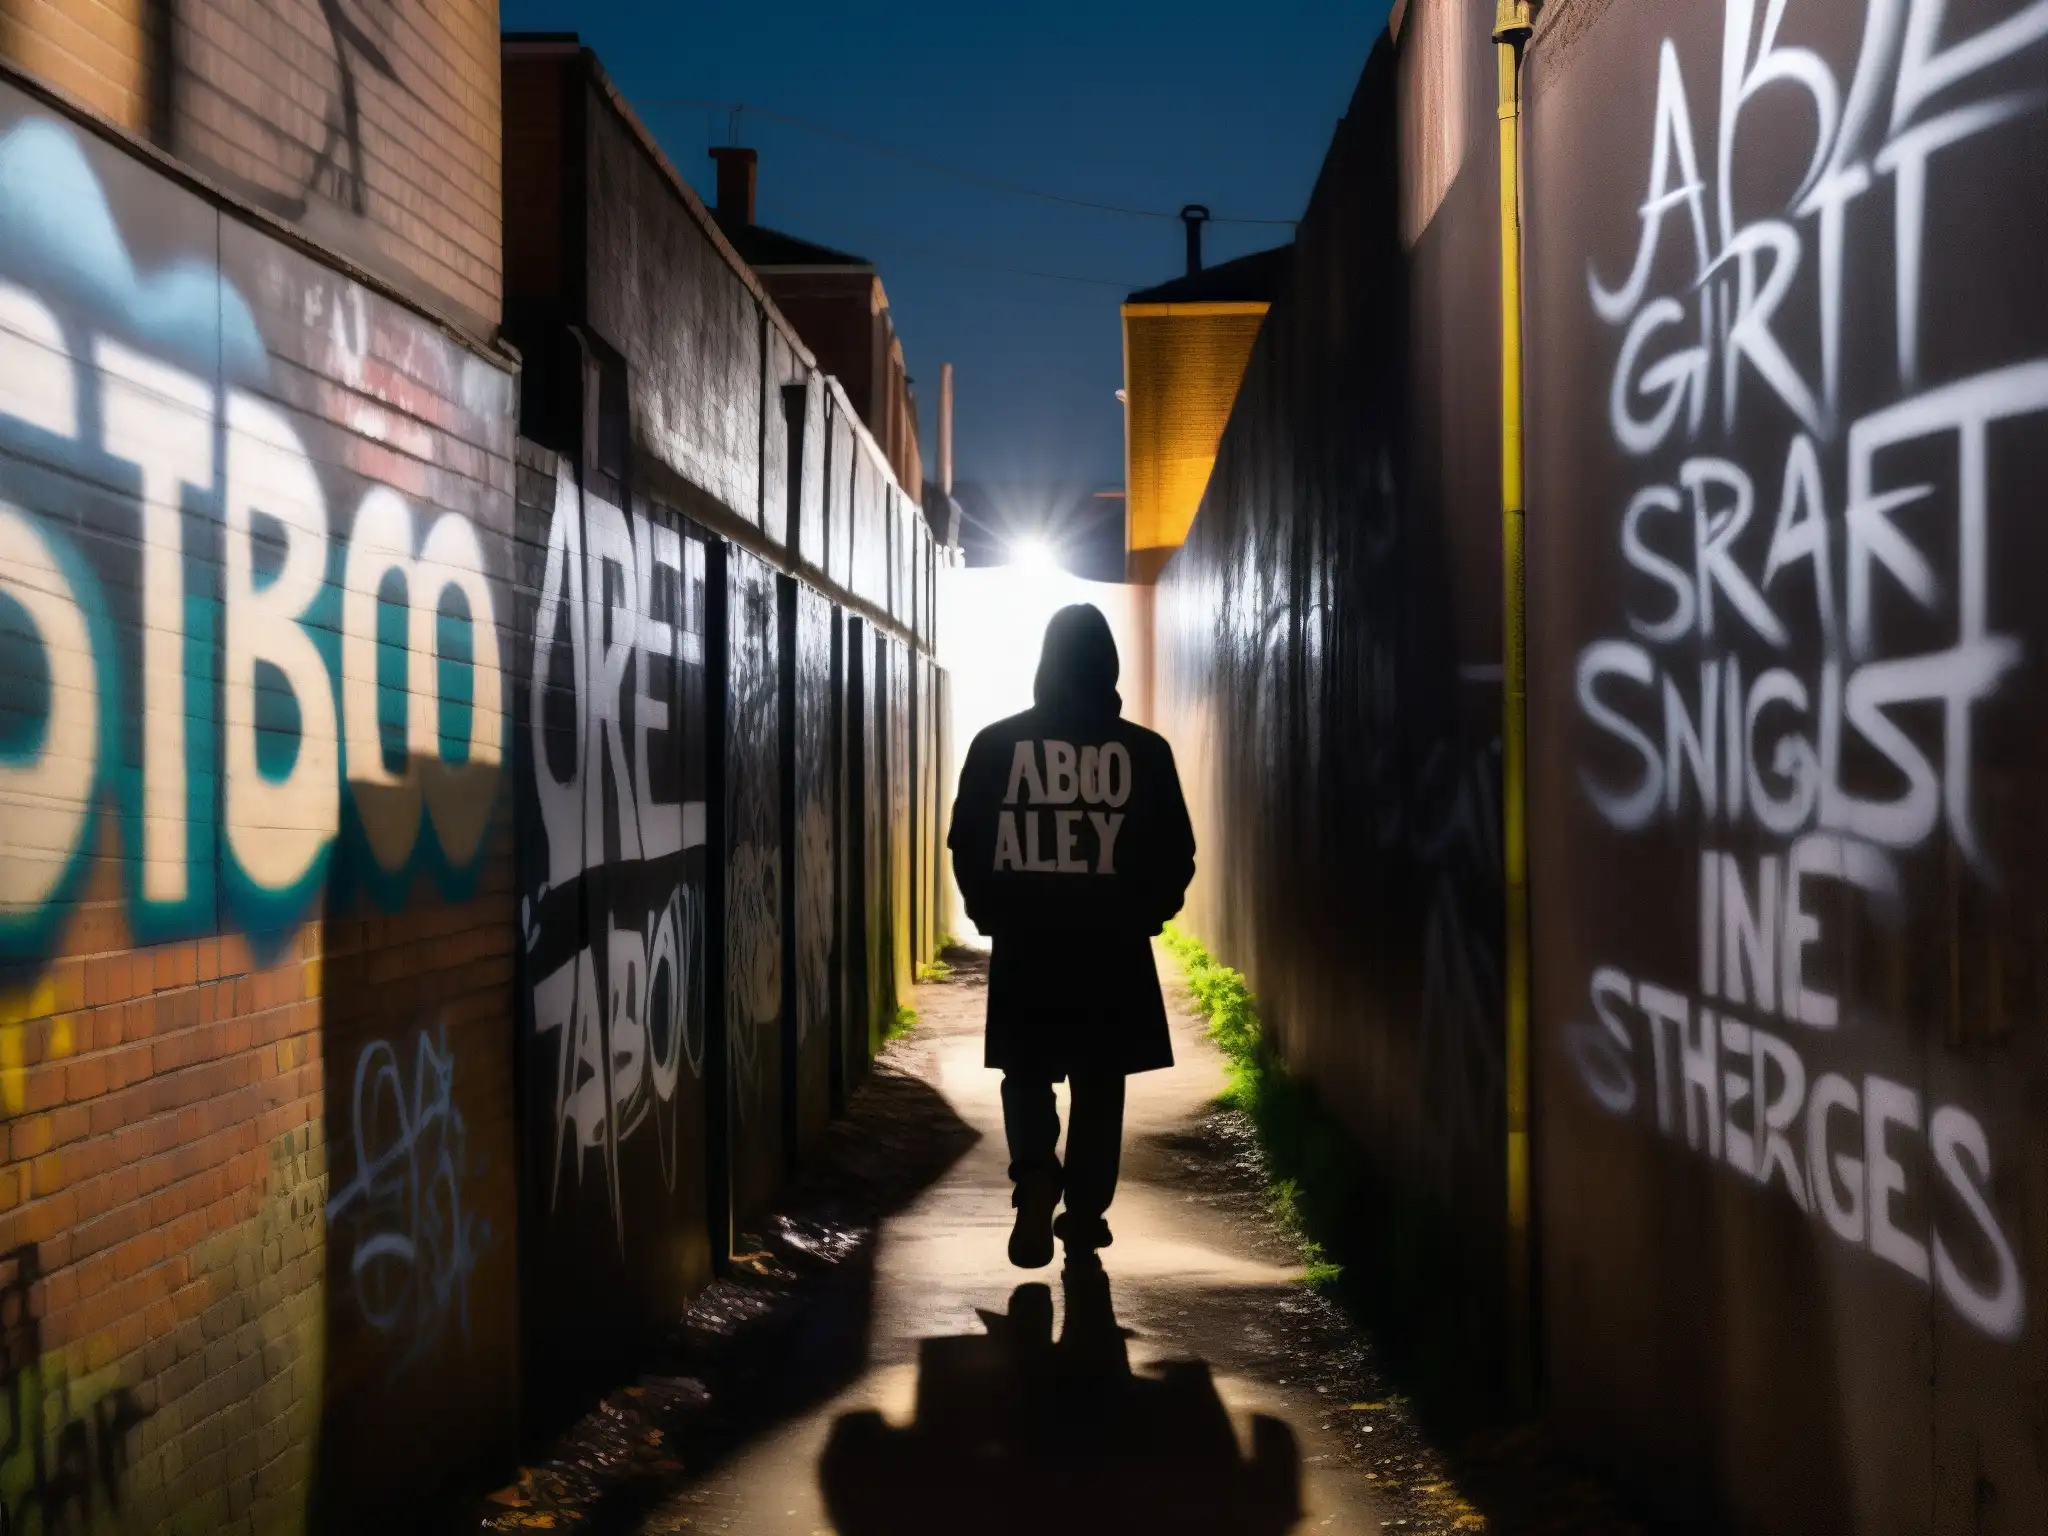 Alleyway urbano de noche con grafitis y misteriosa figura en silueta